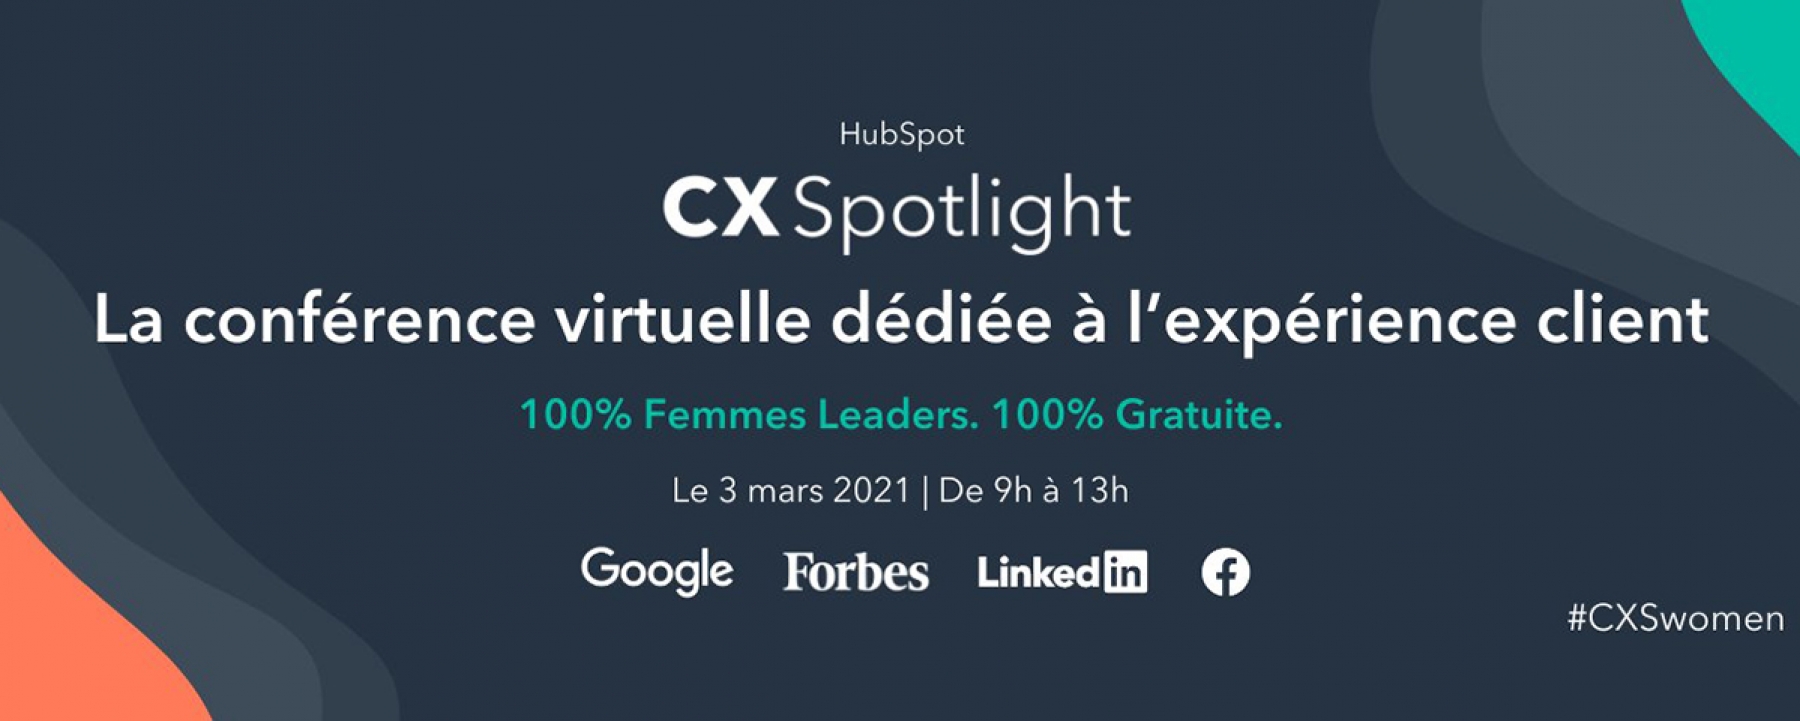 CX Spotlight 2021, une conférence en ligne organisée par Hubspot le 3 mars